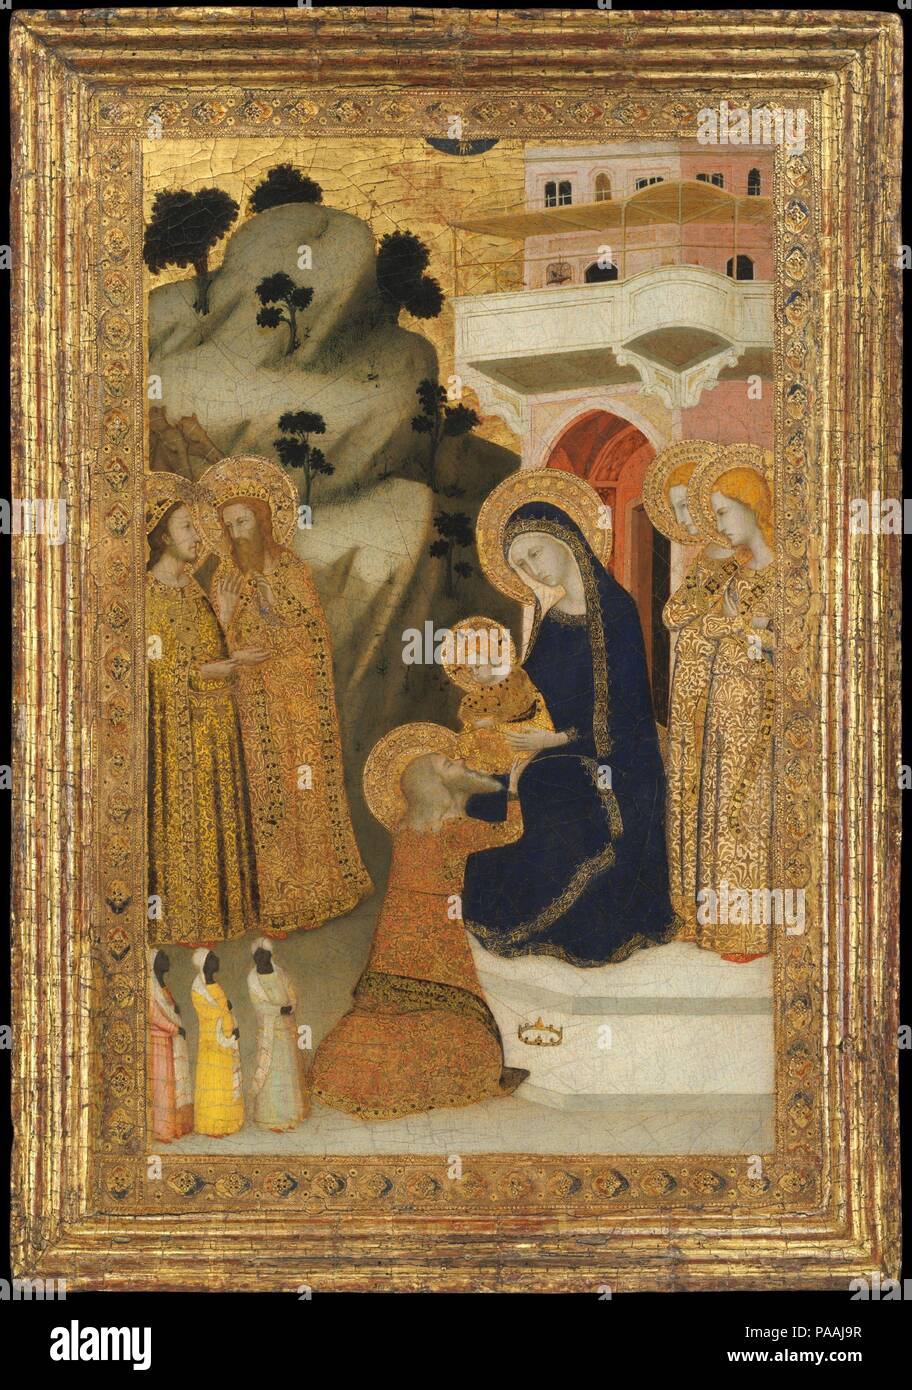 L'Adoration des Mages. Artiste : italien, disciple de Giotto (active deuxième tiers du 14e siècle). Culture : L'Italien, Naples. Dimensions : hors tout, avec cadre, 26 1/8 x 18 3/8 in. (66,4 x 46,7 cm) ; surface peinte, y compris la frontière avec outils, 21 3/8 x 15 in. (54,3 x 38,1 cm). Date : ca. 1340-43. Vêtus de robes brodées d'or somptueux, trois mages et deux anges, représentée de profil à droite, adorent la Vierge et l'enfant, qui sont assis à la porte d'un palais. Ils sont accompagnés par trois petites bord dans le coin inférieur gauche. L'ajout de tensioactifs les Banque D'Images